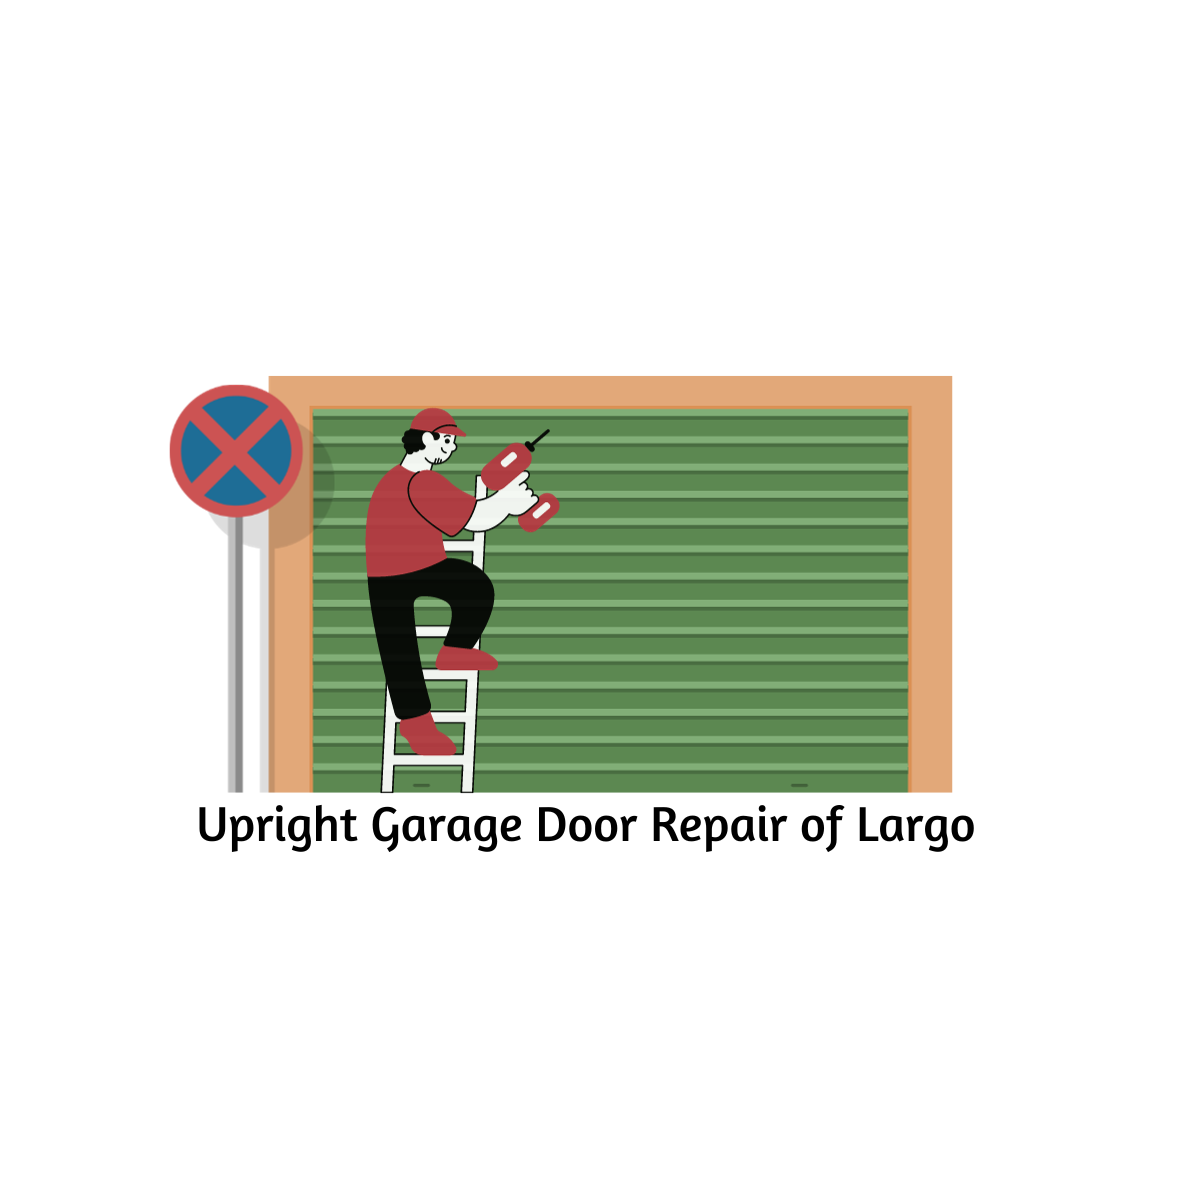 Upright Garage Door Repair of Largo